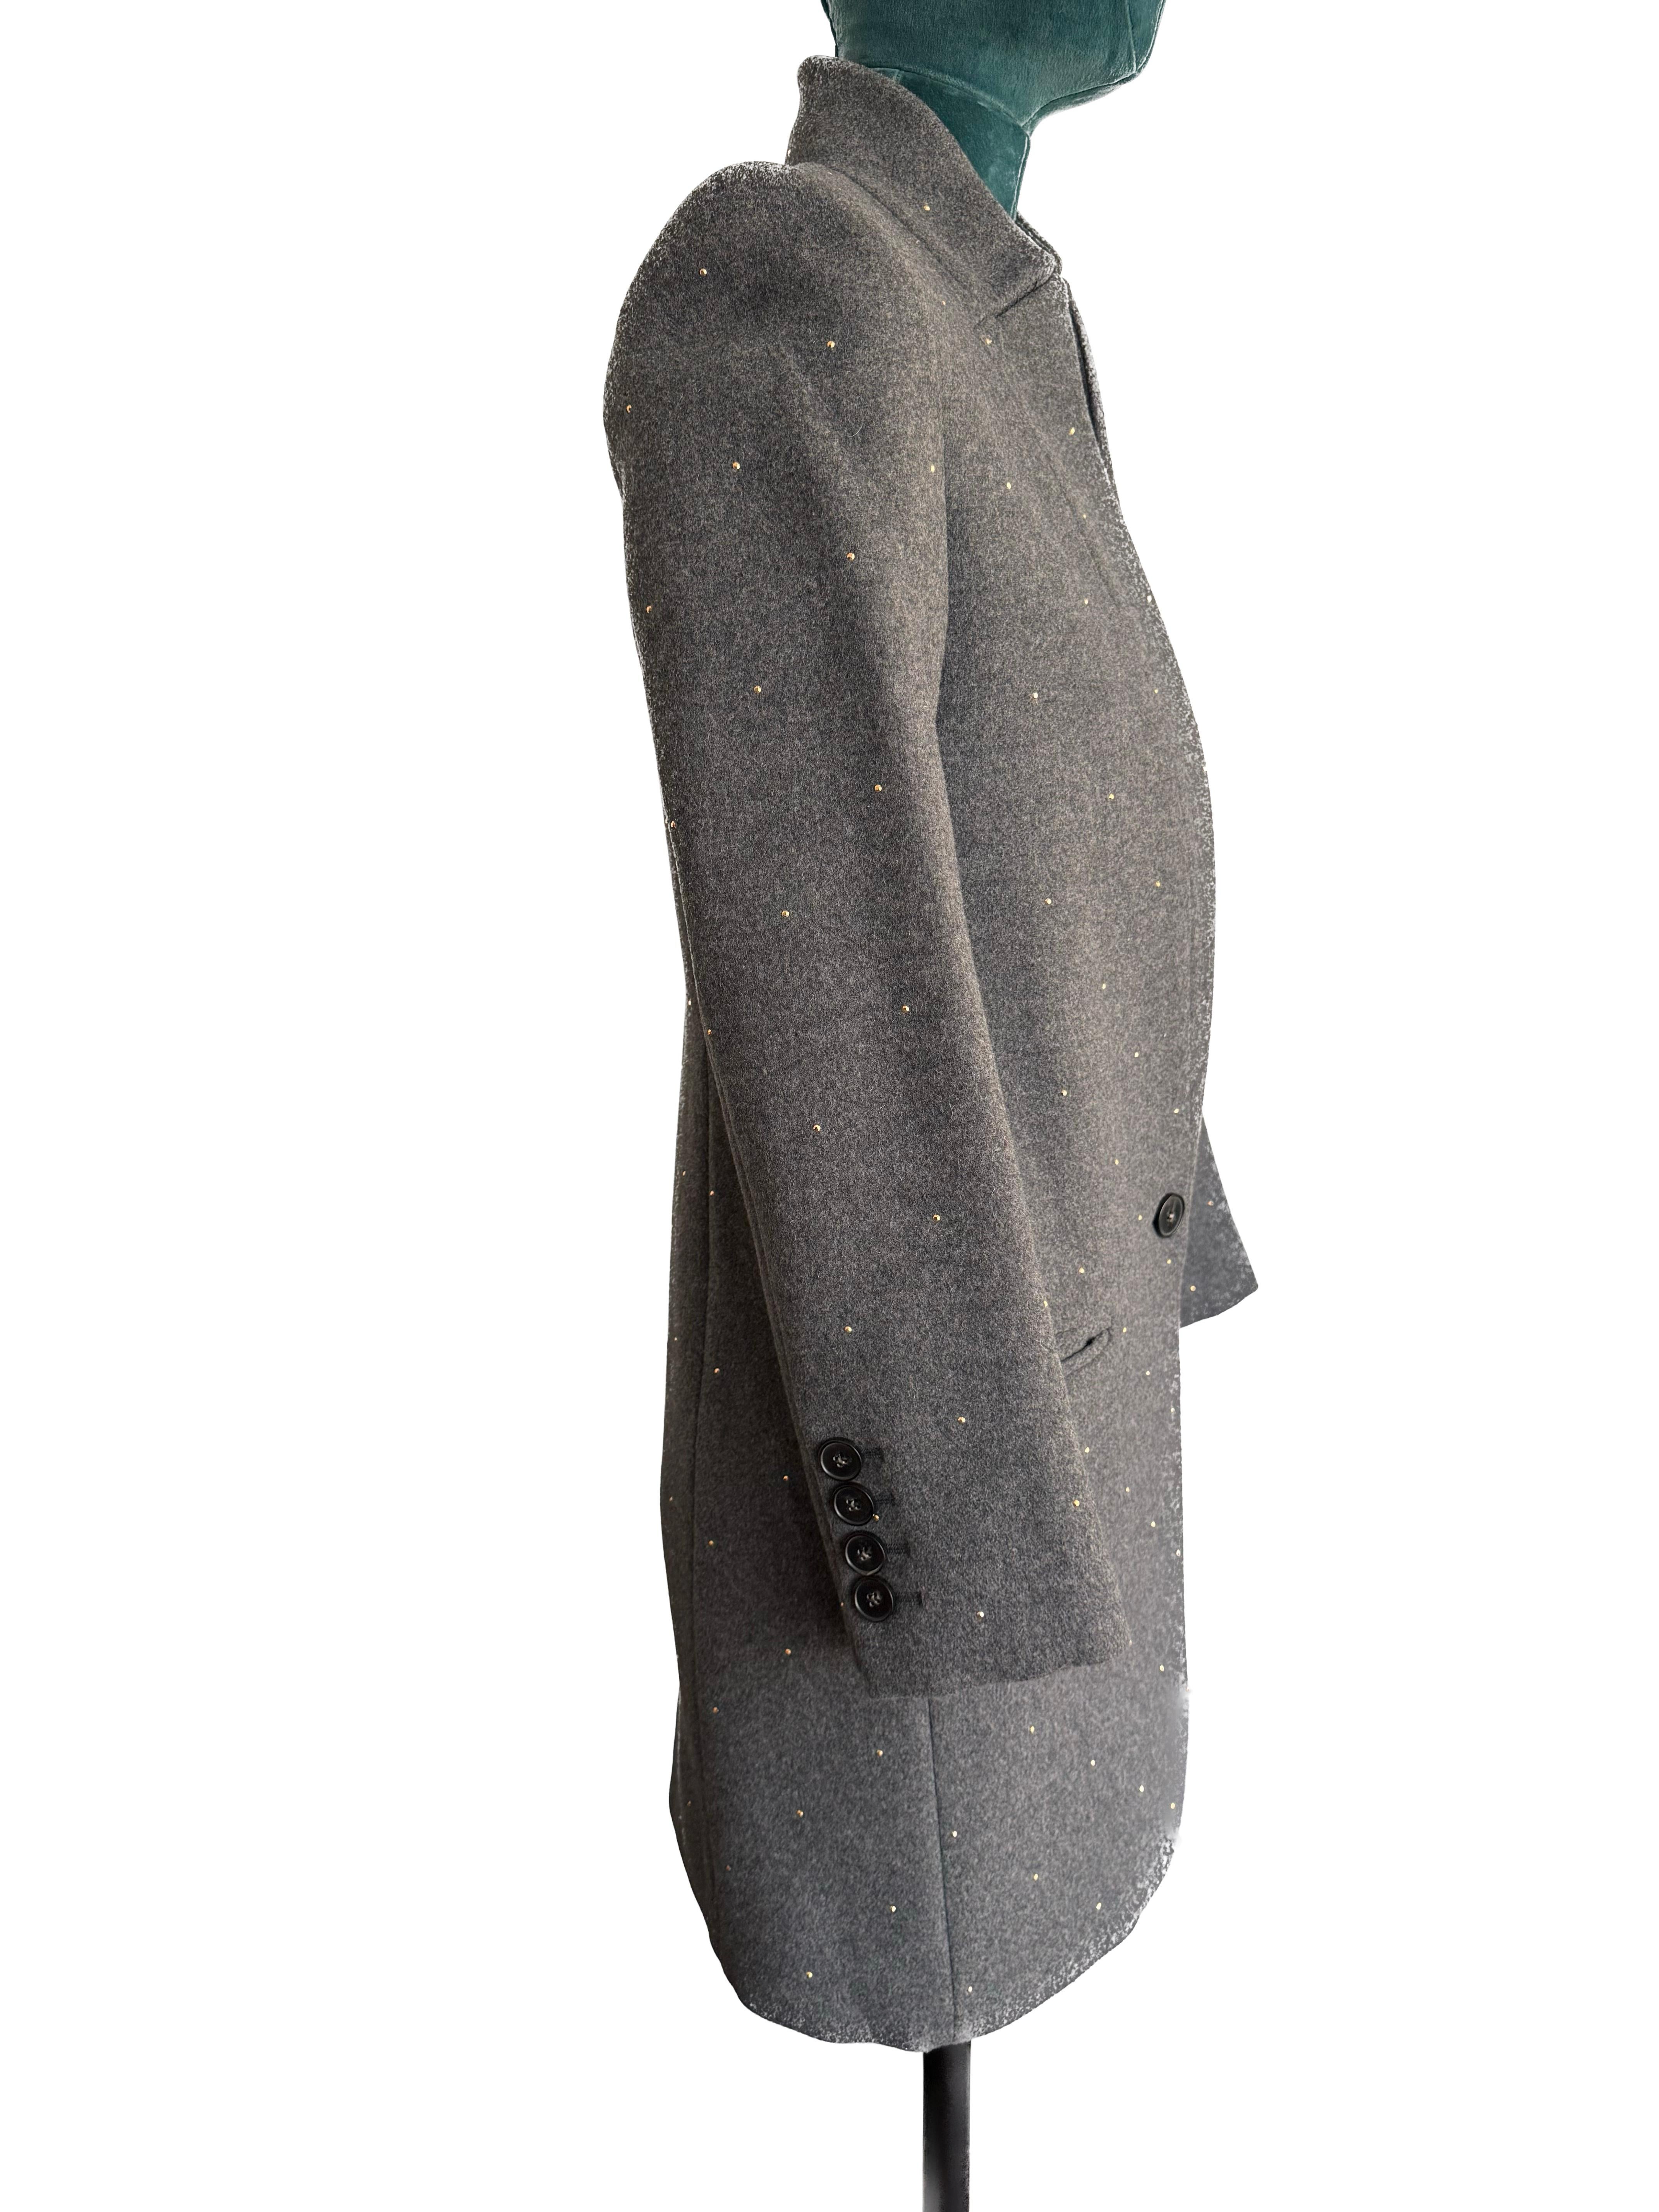 Die Stella McCartney Grey Wool Blend Cashmere Mid-Length Blazer Jacket ist ein sartoriales Meisterwerk, das modernen Luxus und klassische britische Reitereinflüsse nahtlos miteinander verbindet. Dieses exquisite Stück in ausgezeichnetem Zustand ist